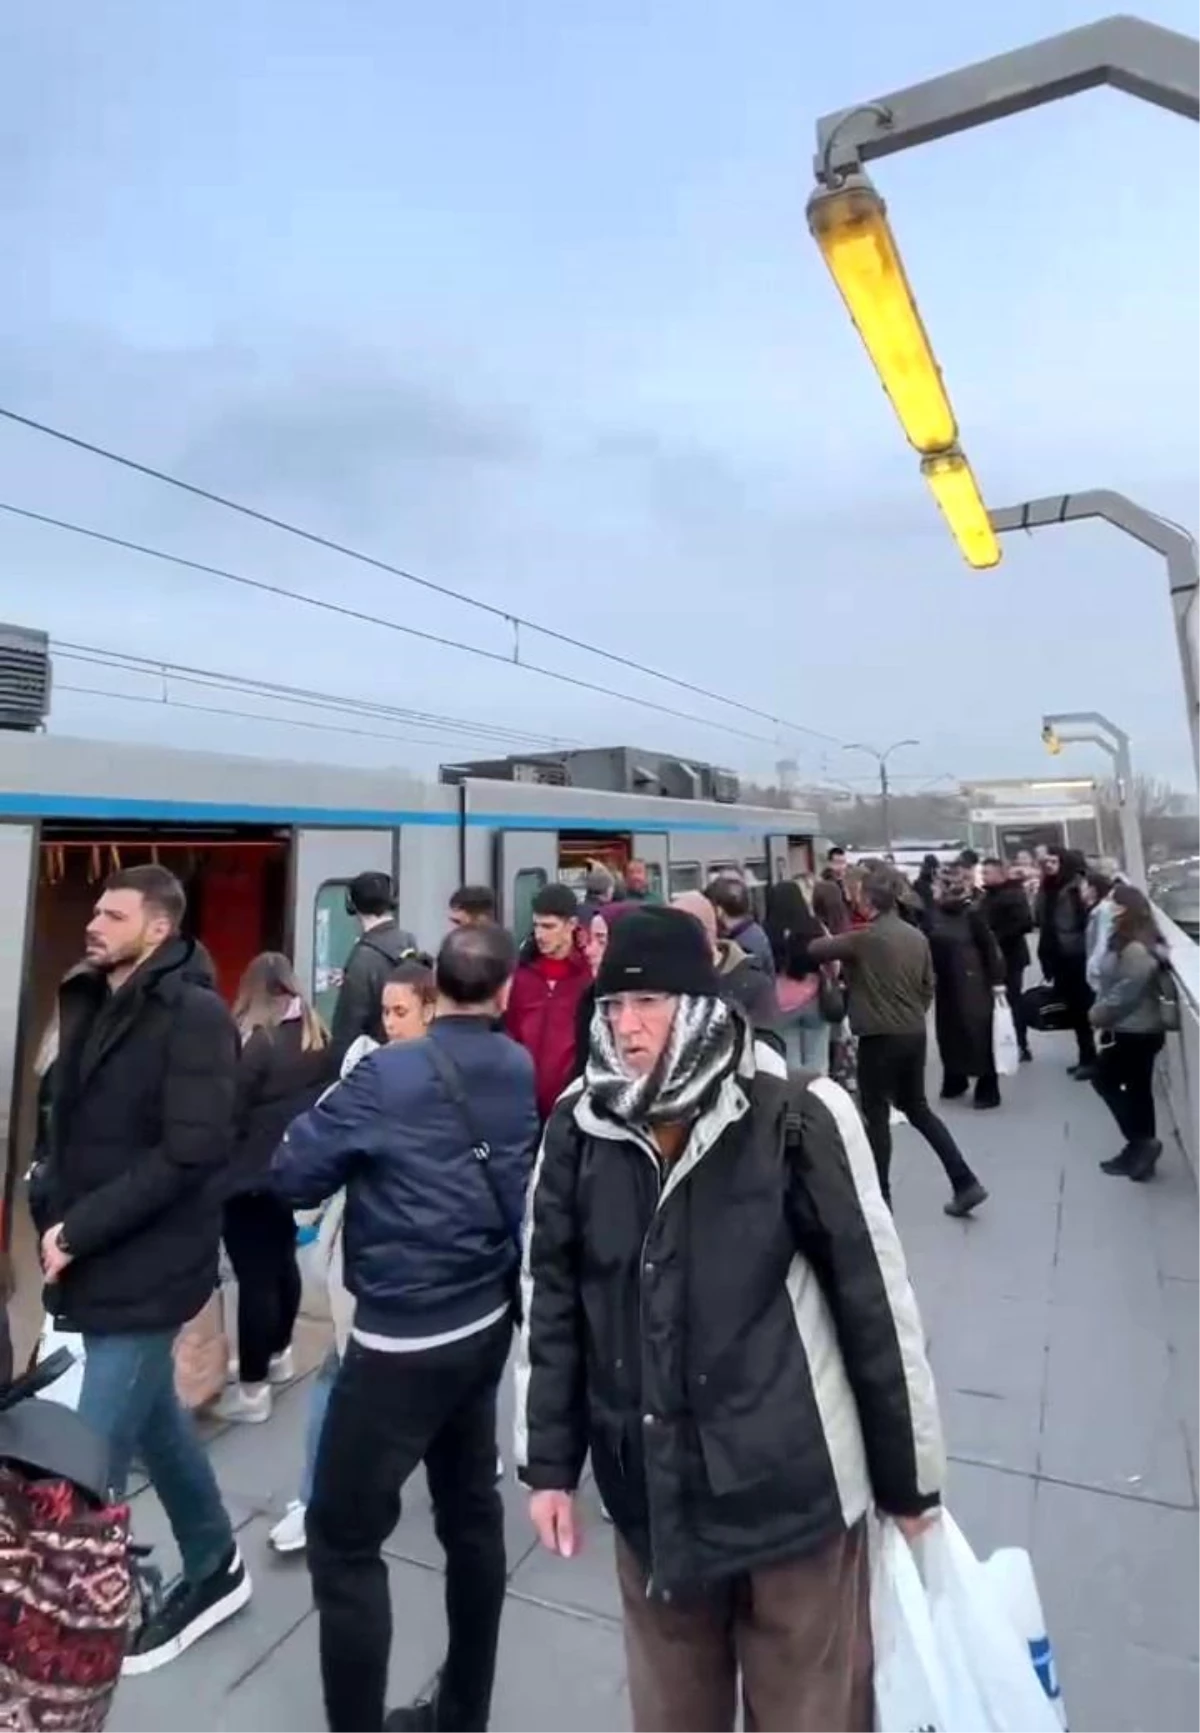 Yenikapı-Atatürk Havalimanı Metro Hattında Arıza: Yolcular Şaşkına Döndü